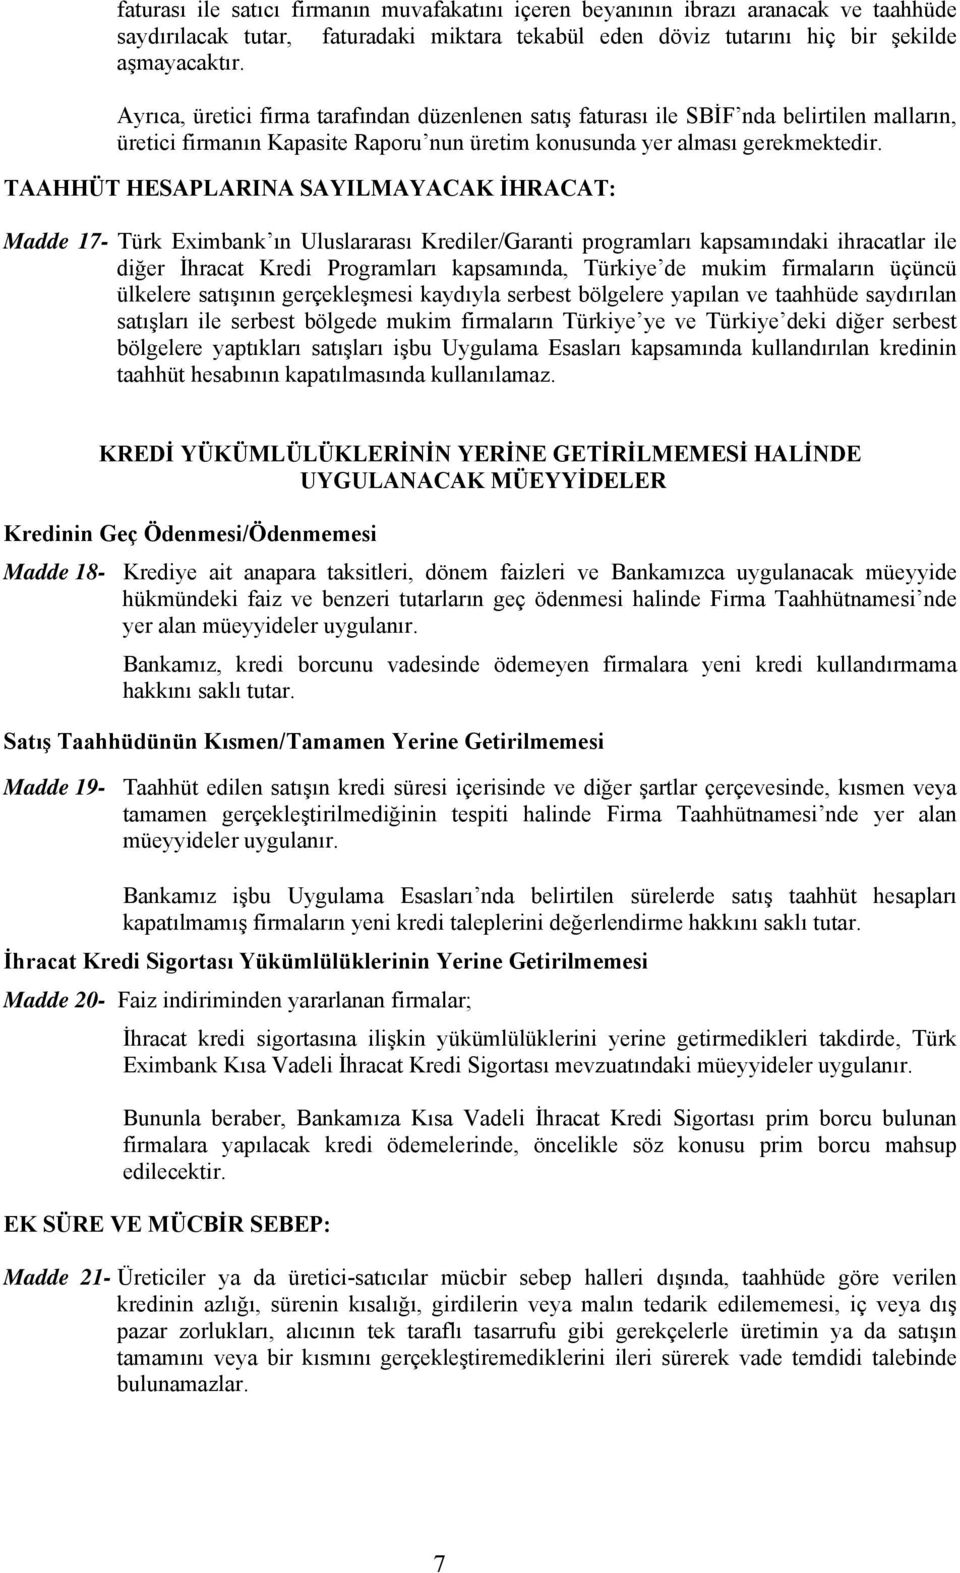 TAAHHÜT HESAPLARINA SAYILMAYACAK İHRACAT: Madde 17- Türk Eximbank ın Uluslararası Krediler/Garanti programları kapsamındaki ihracatlar ile diğer İhracat Kredi Programları kapsamında, Türkiye de mukim